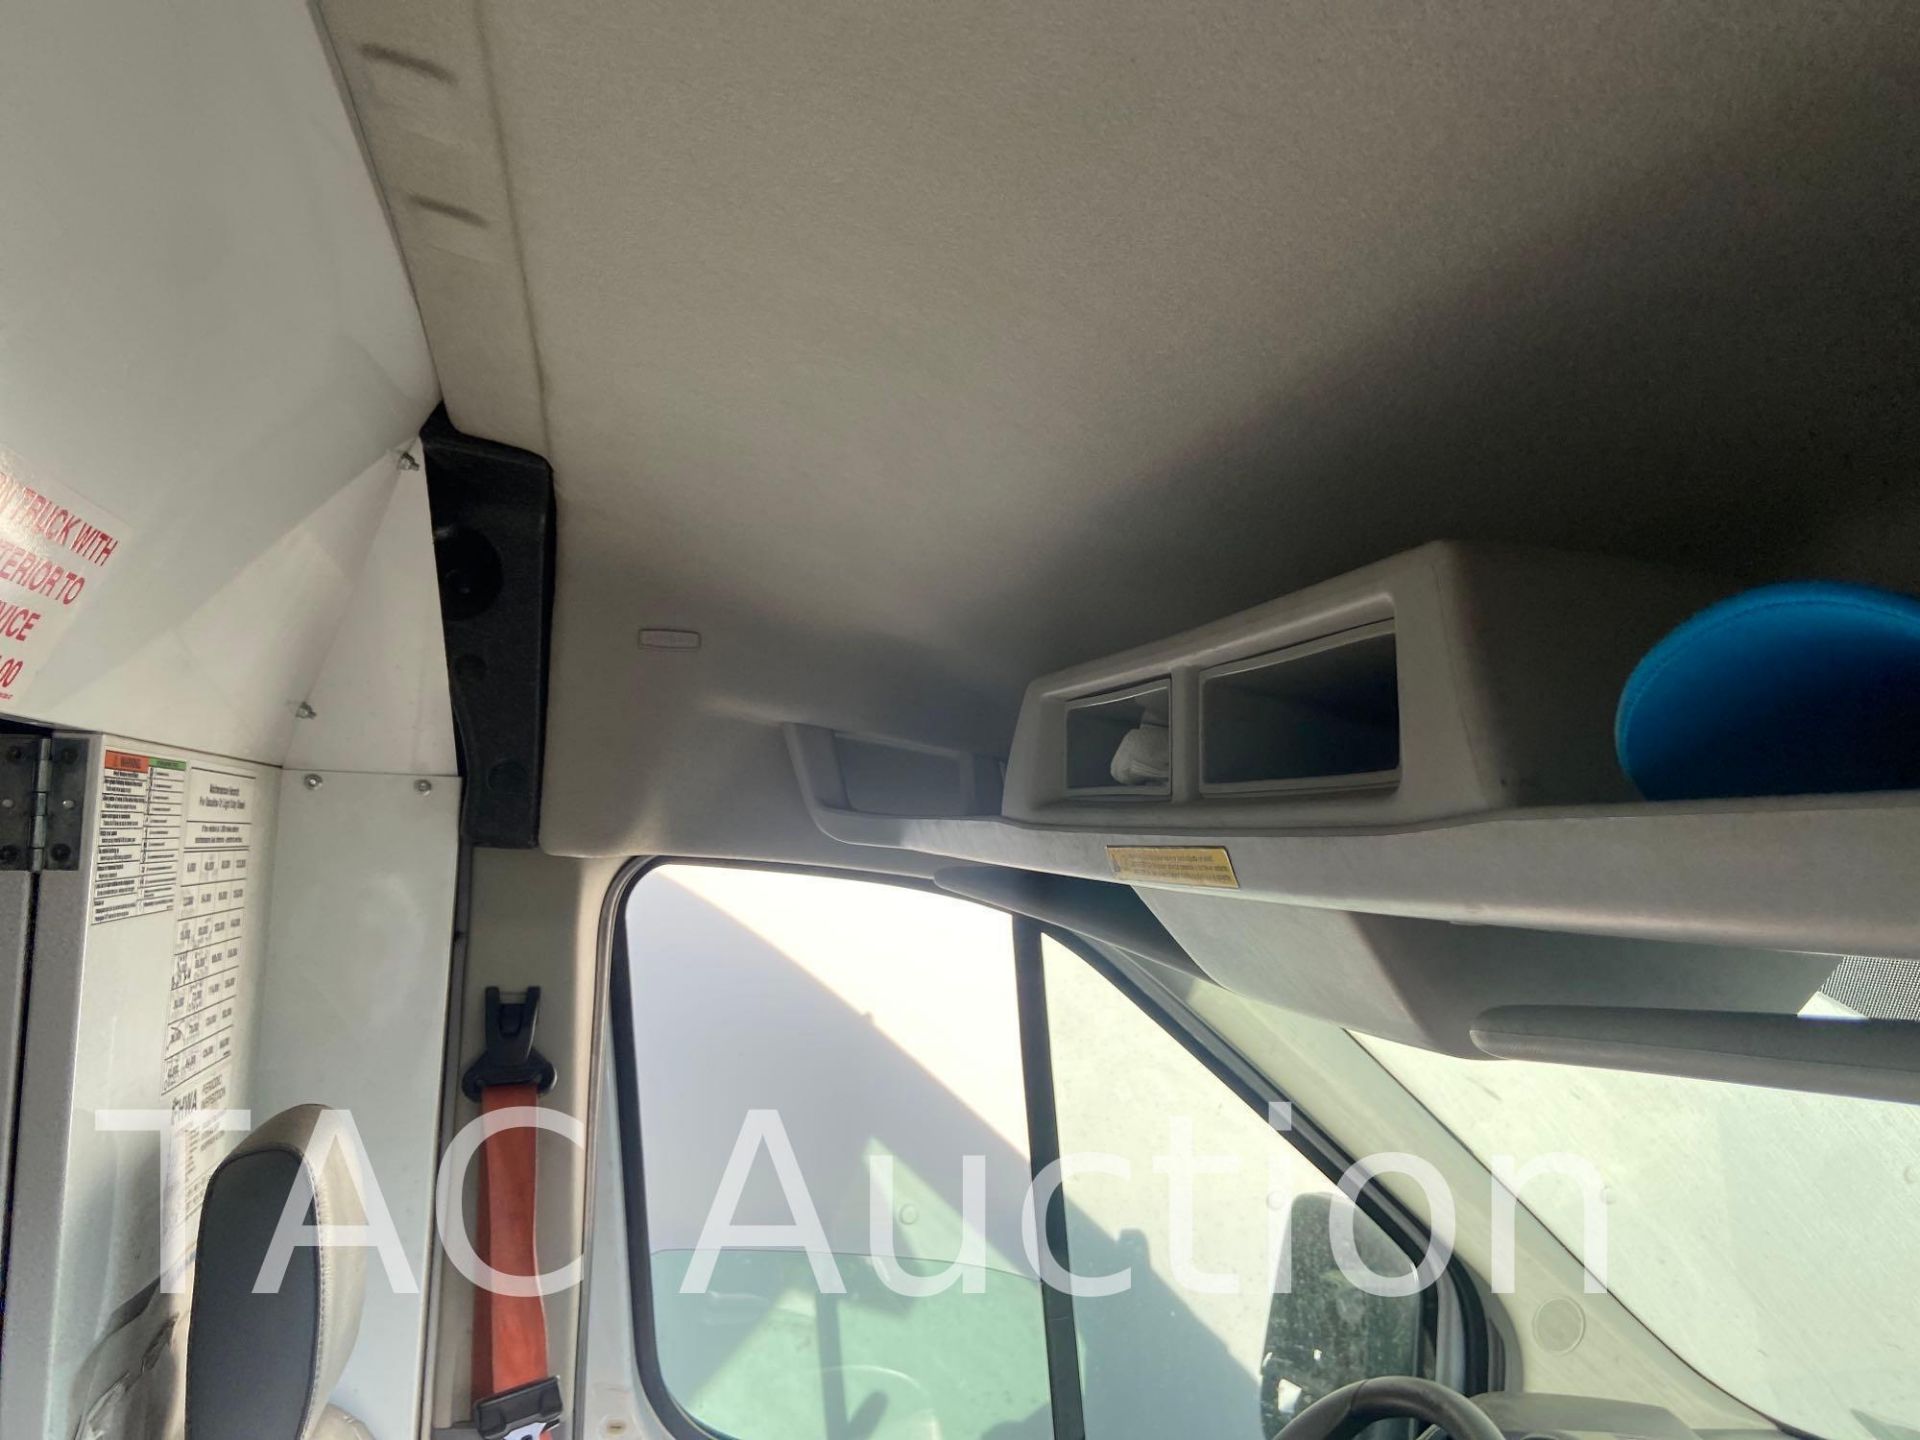 2019 Ford Transit 150 Cargo Van - Image 103 of 133